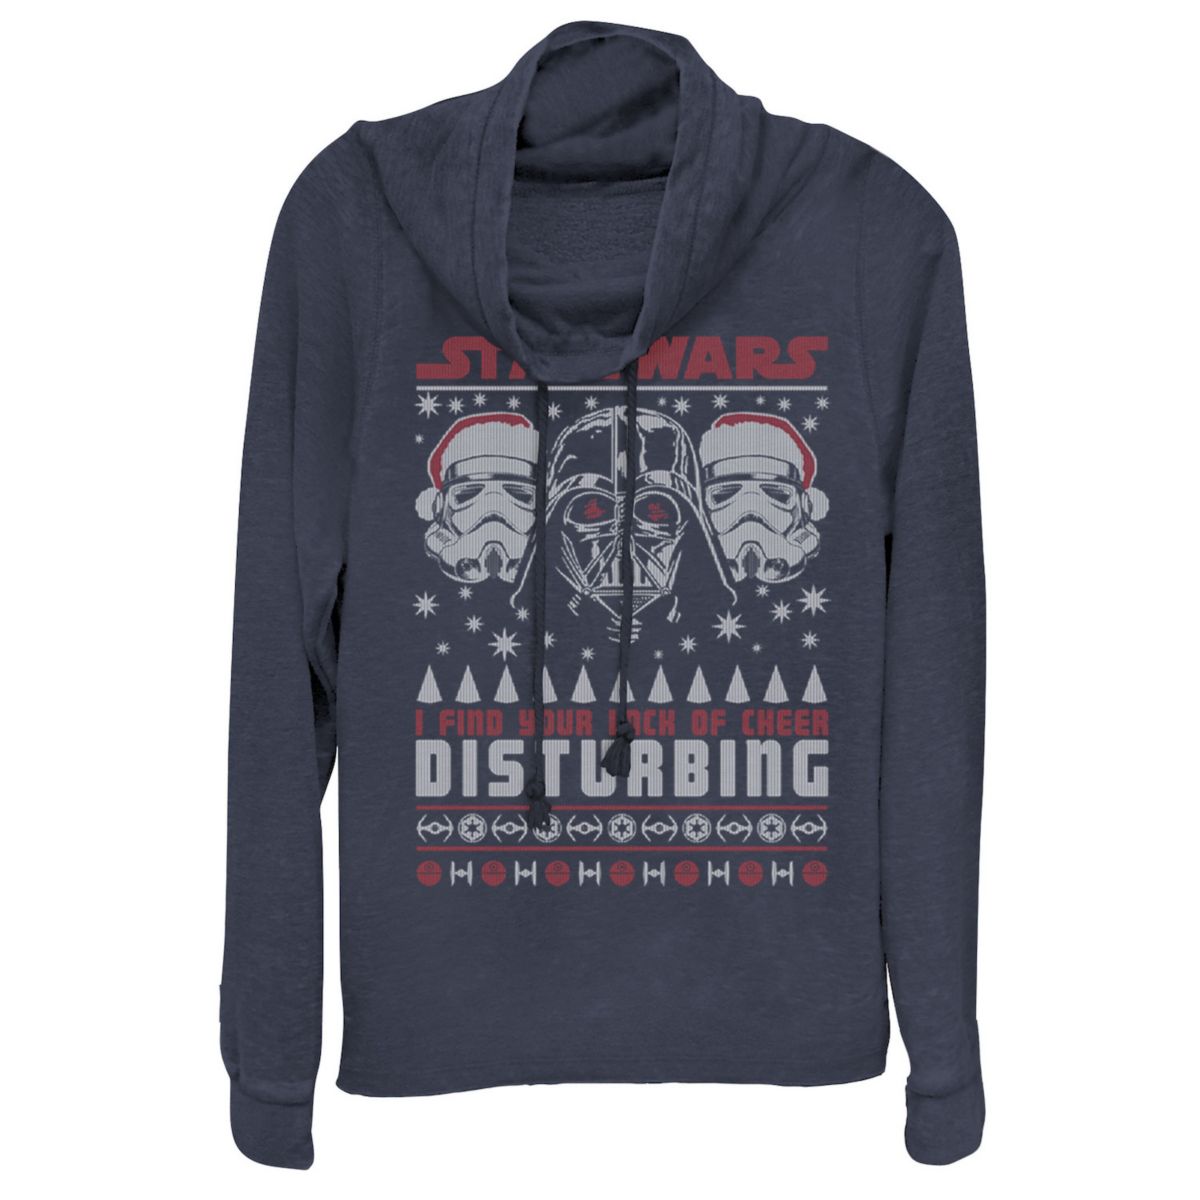 Пуловер с капюшоном для юниоров «Звездные войны Дарт Вейдер» без веселья «Уродливый рождественский» пуловер с воротником-хомутом Star Wars